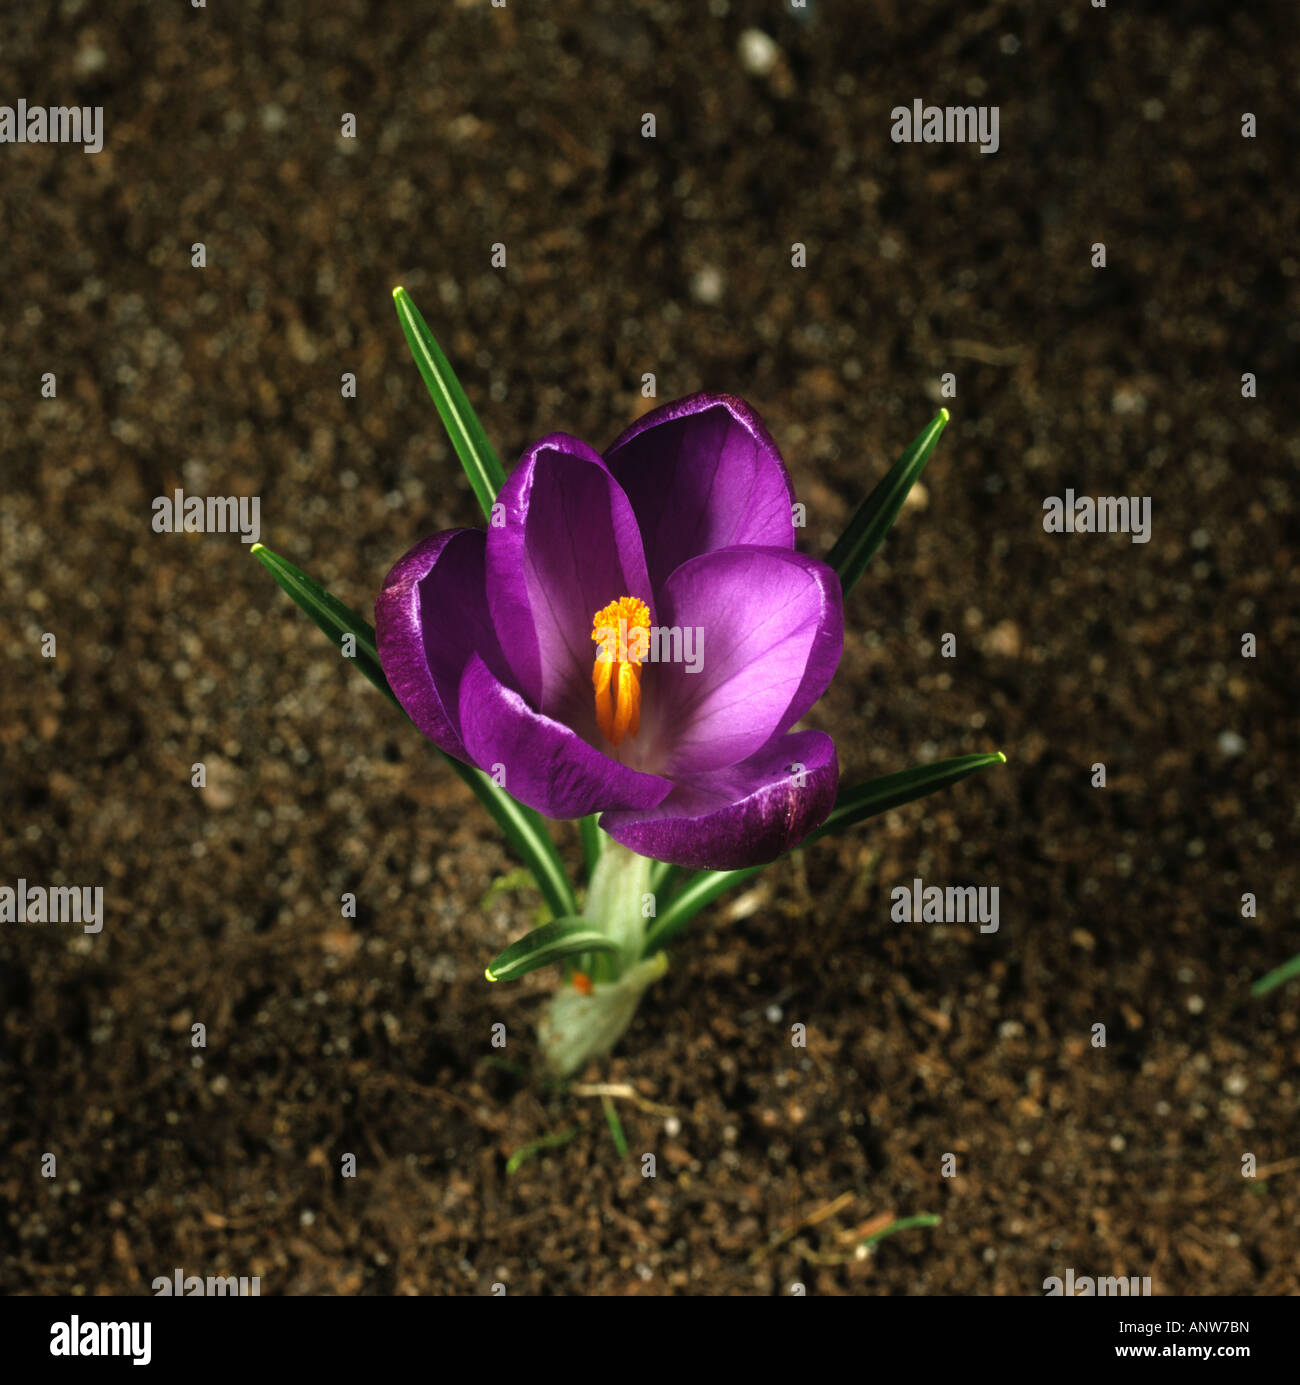 Tercera de una serie de fotografías que muestran la apertura de una flor de Crocus Foto de stock